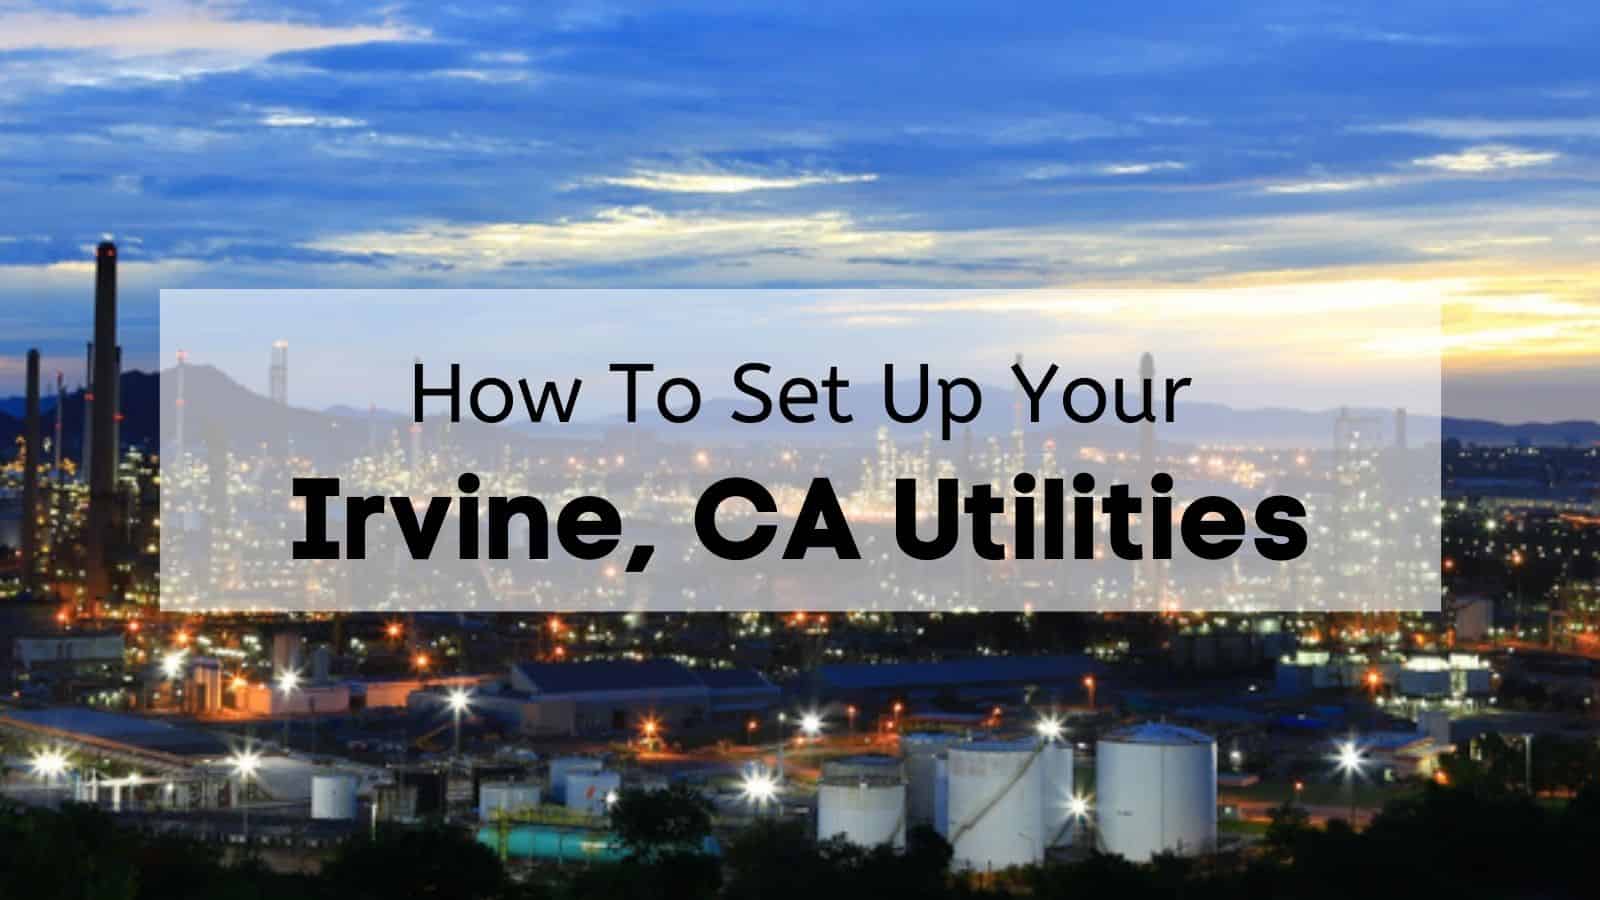 Irvine, CA Utilities